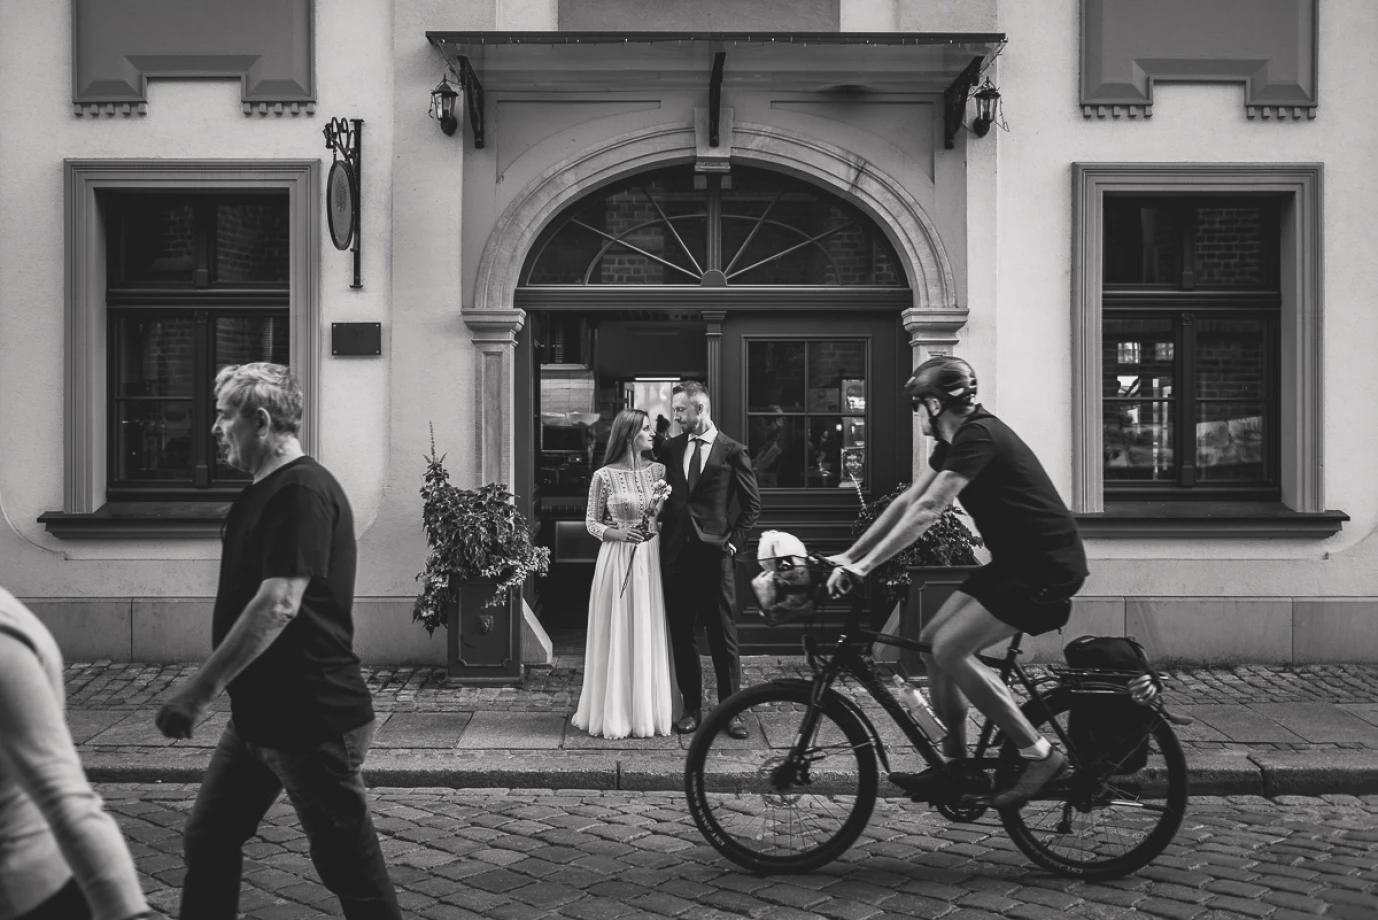 zdjęcia wroclaw fotograf jacek-kawecki-fotografia portfolio zdjecia slubne inspiracje wesele plener slubny